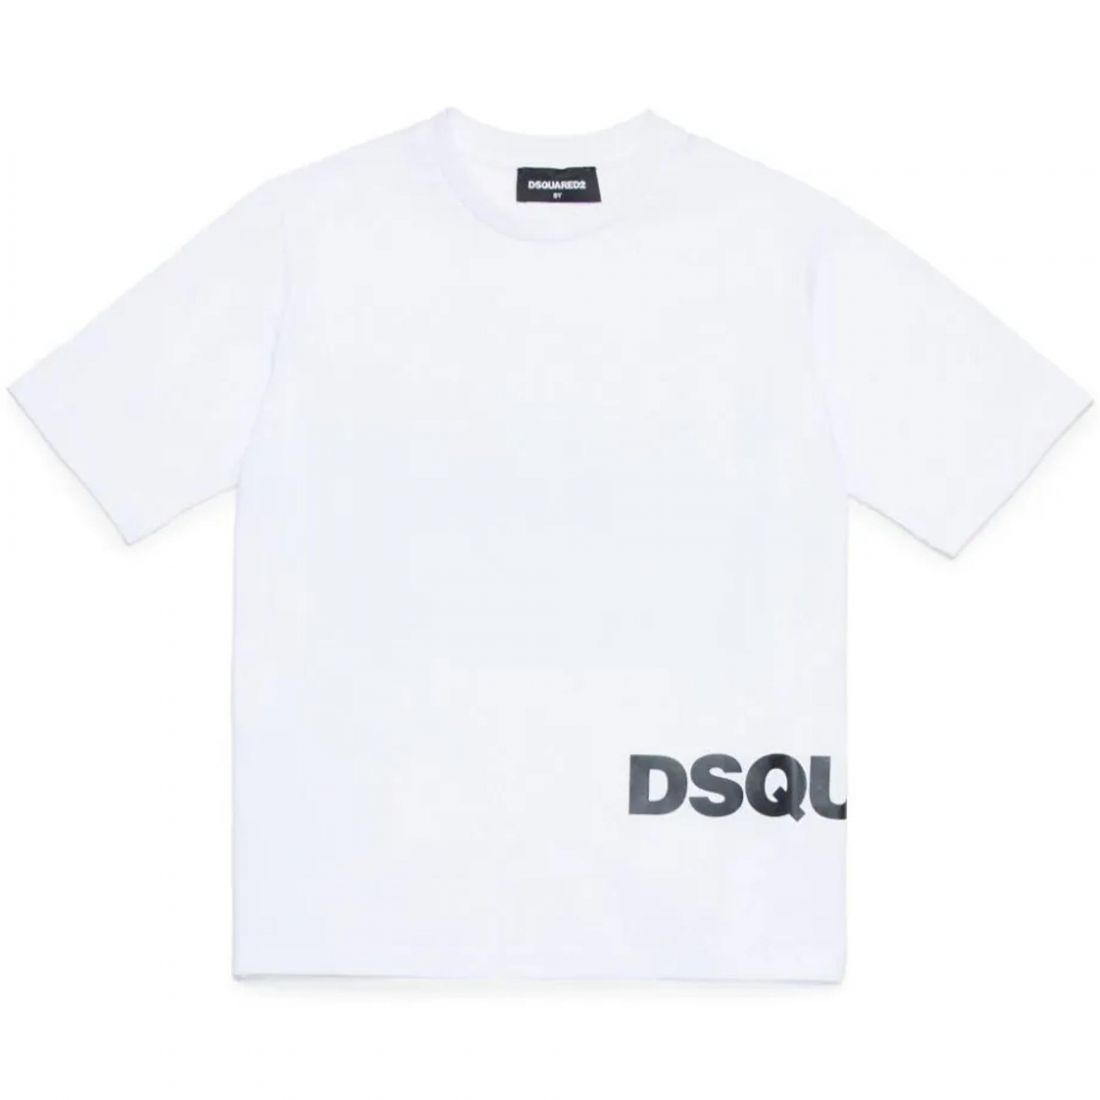 Dsquares2 Kids T-shirt